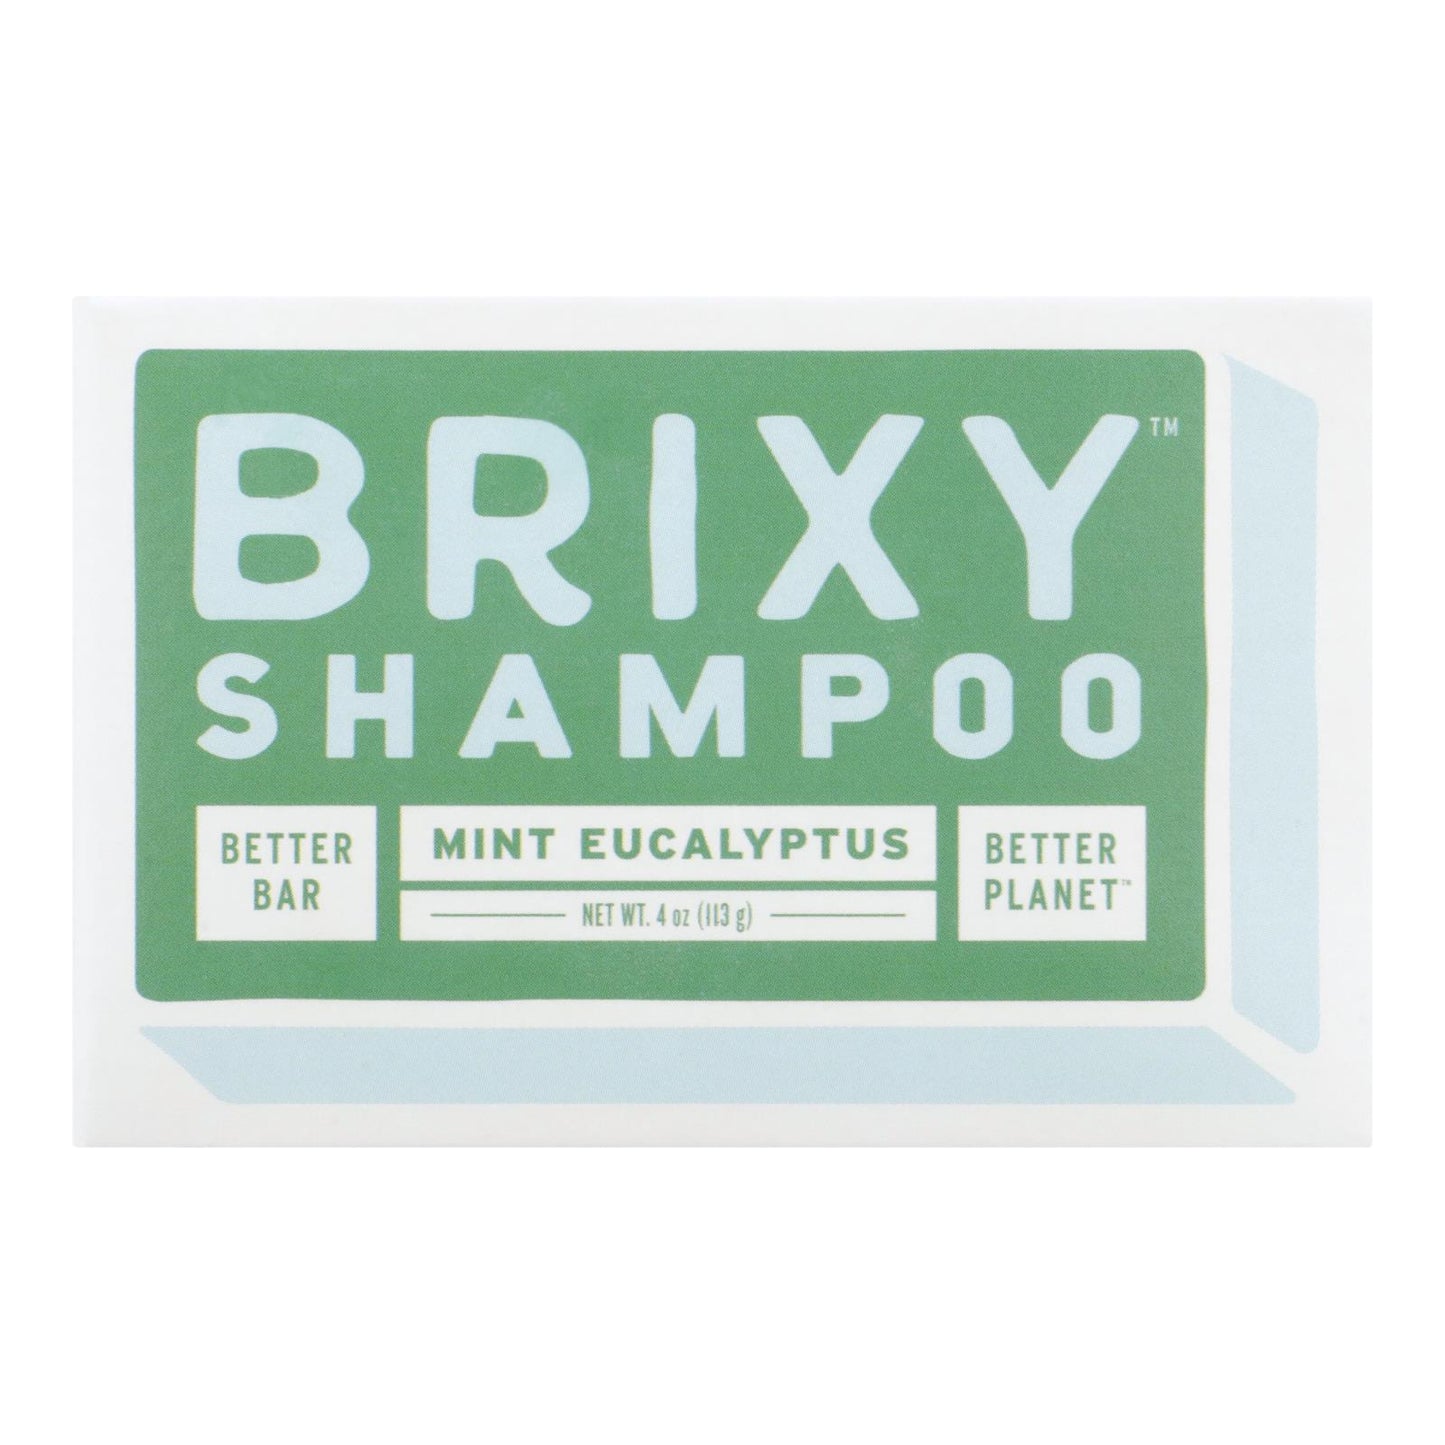 Brixy - Shampoo Bar Mint Euclypt - 1 Each -4 Oz